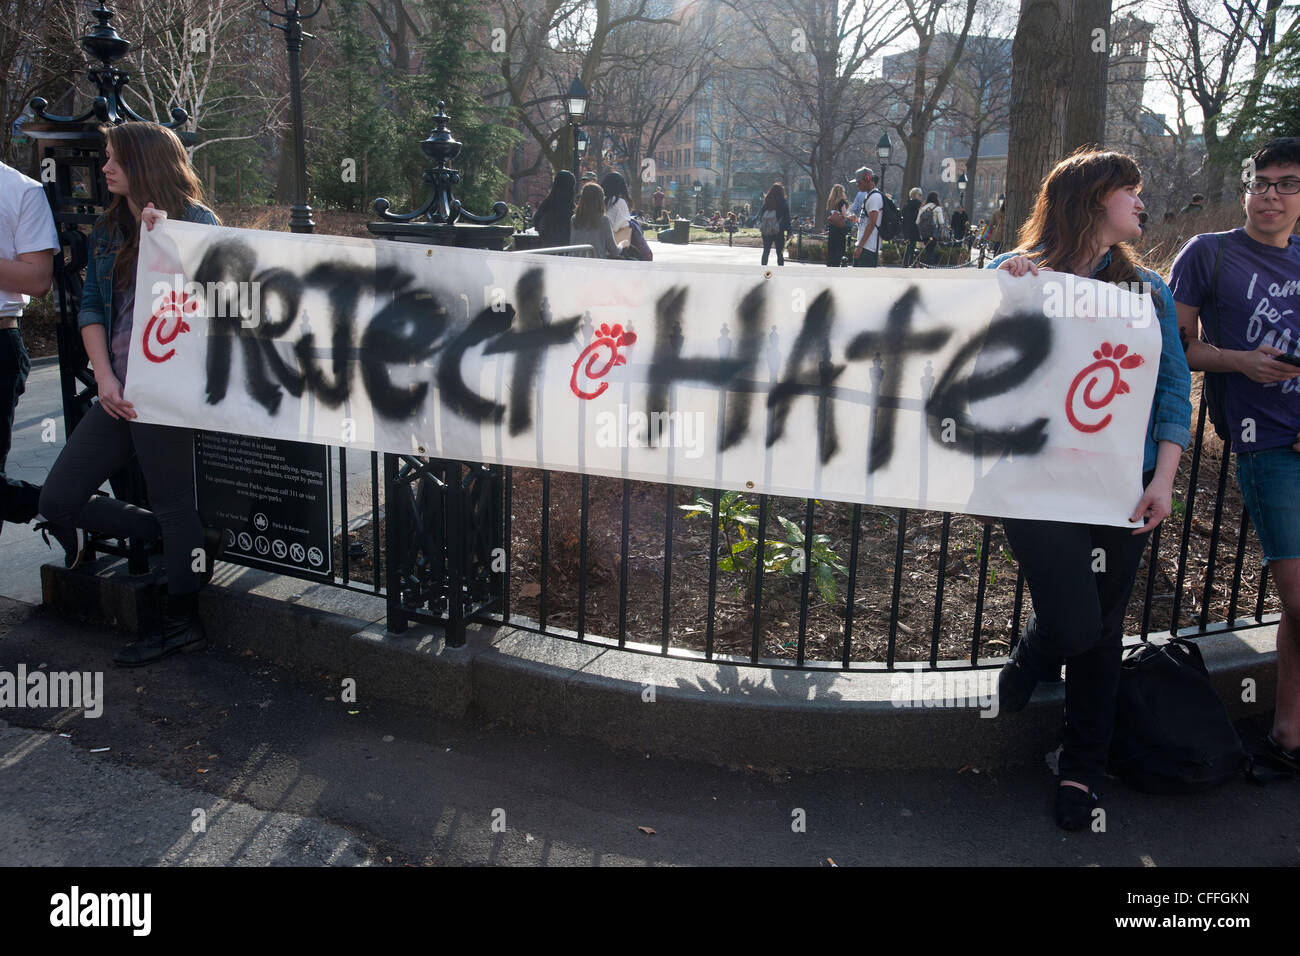 NYU Studenten und ihre Anhänger protestieren über Spenden, dass die Fastfood-Kette Chick-Fil-A, Anti-Homosexuell Gruppen gibt Stockfoto